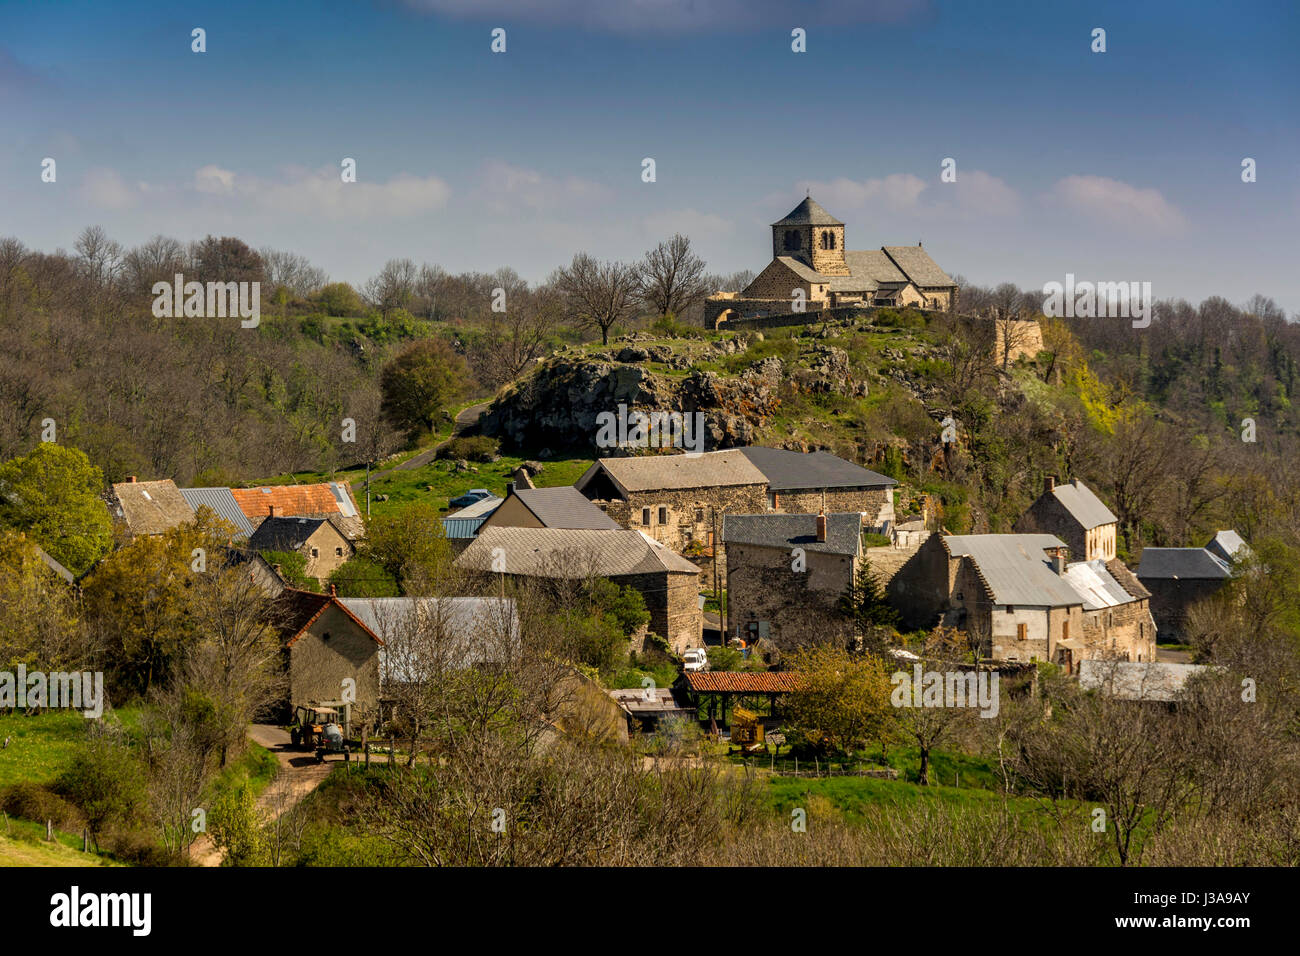 Village of Dauzat sur Vodable. Puy de Dome. Auvergne. France Stock Photo